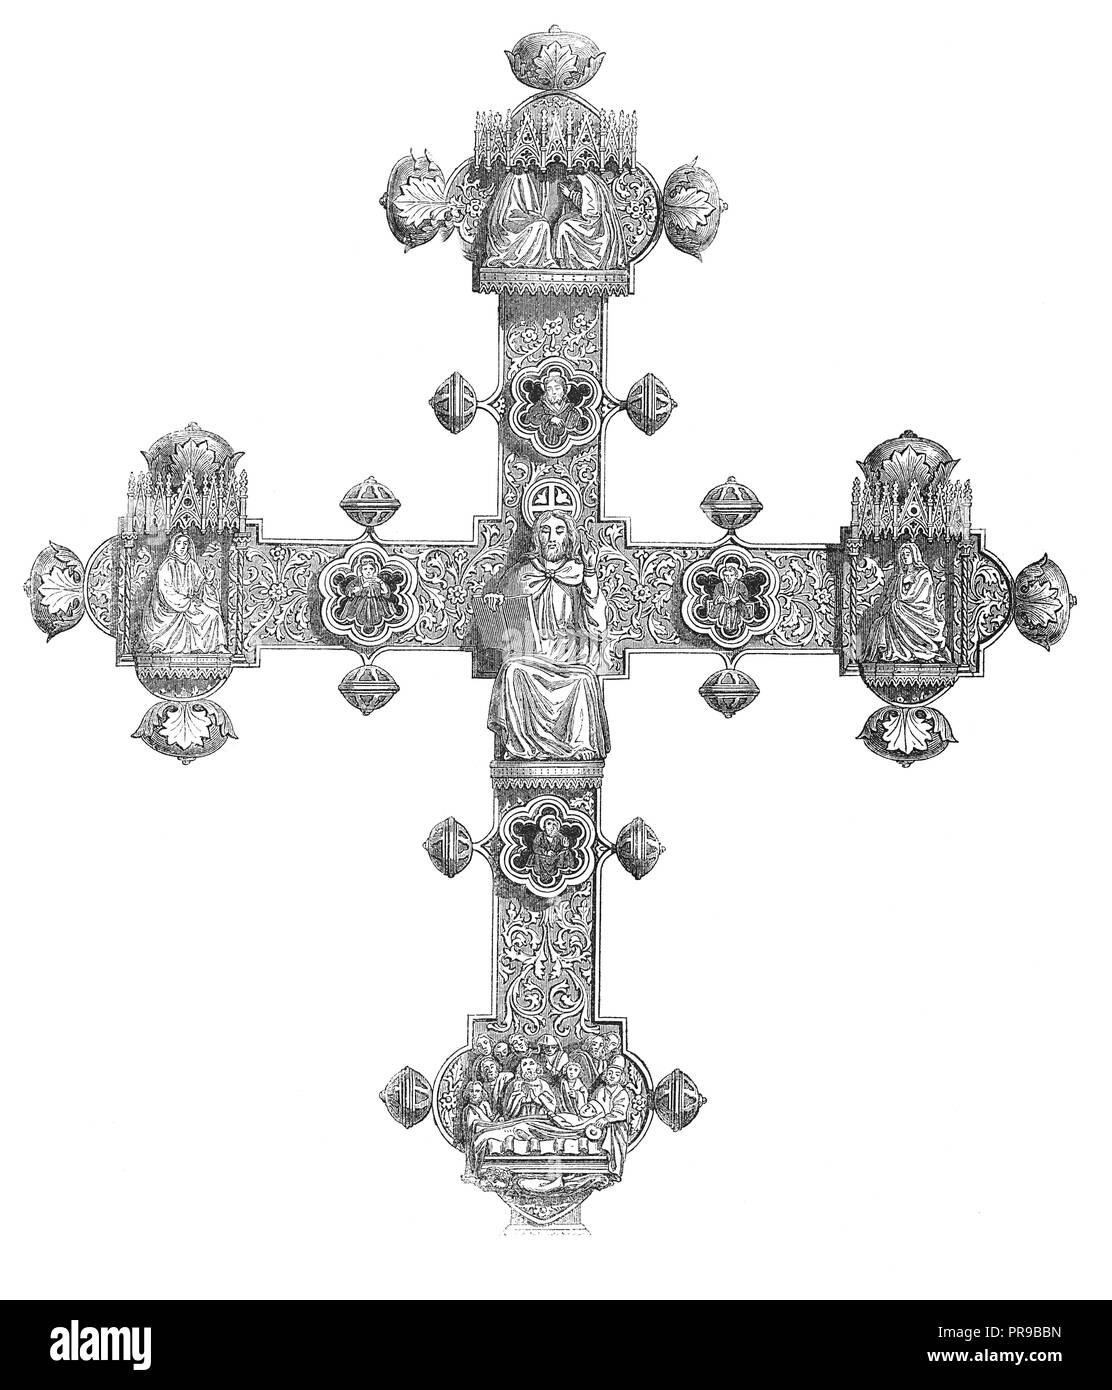 19 Abbildung: das Kreuz von einer Kirche in Lanciano. Originale Kunstwerke in Le Magasin Pittoresque von M. A. Lachevardiere, Paris, 18 veröffentlicht. Stockfoto